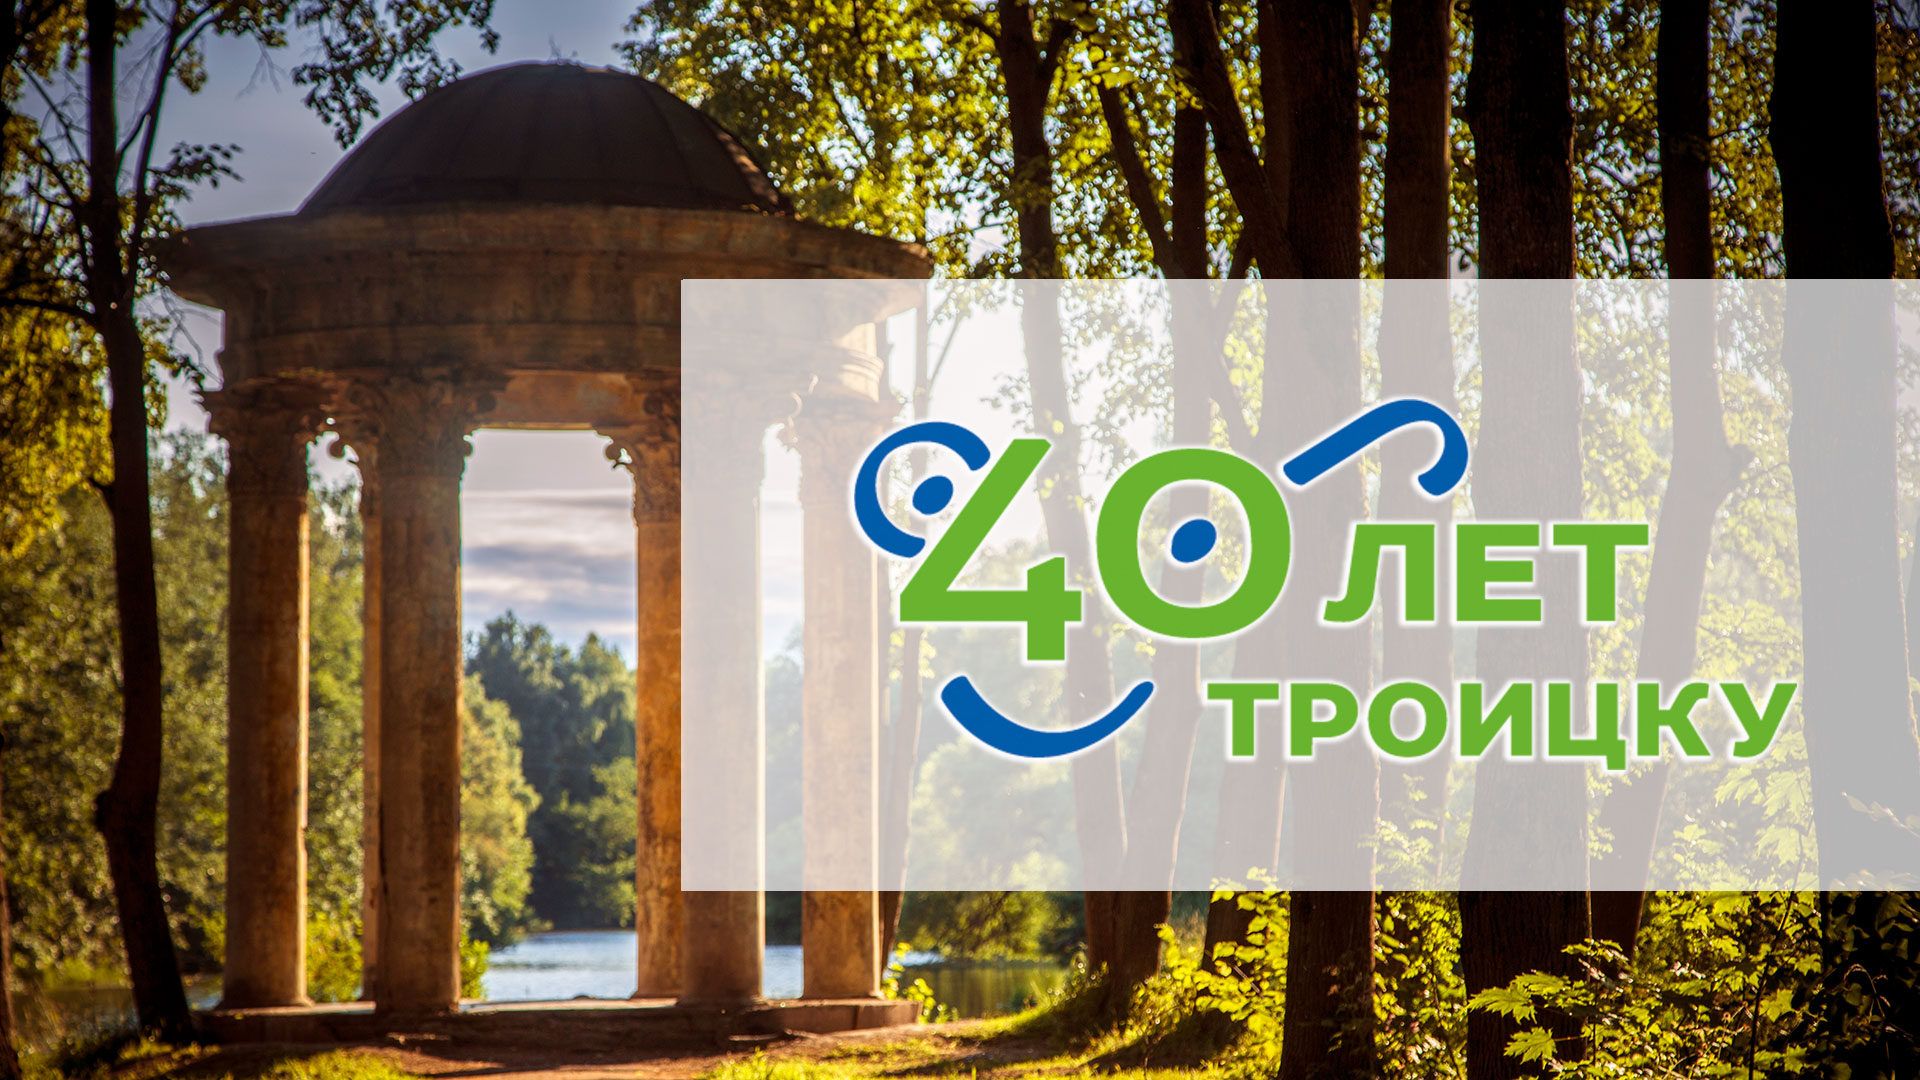 План проведения  мероприятий, посвященных 40-летию городского округа Троицк